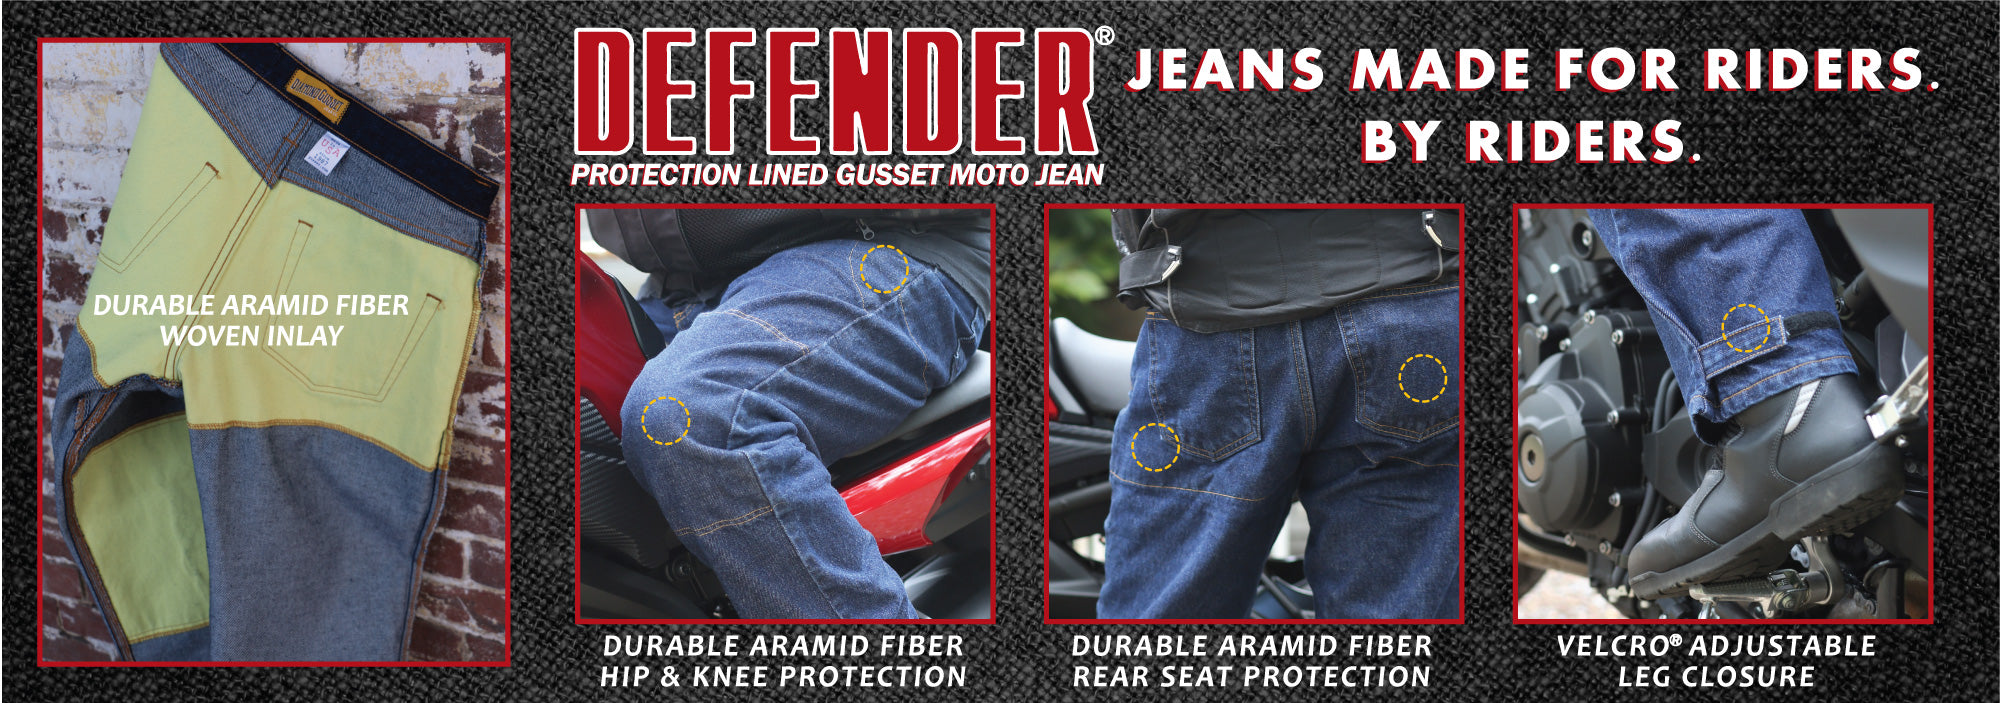 Defender Jeans Details